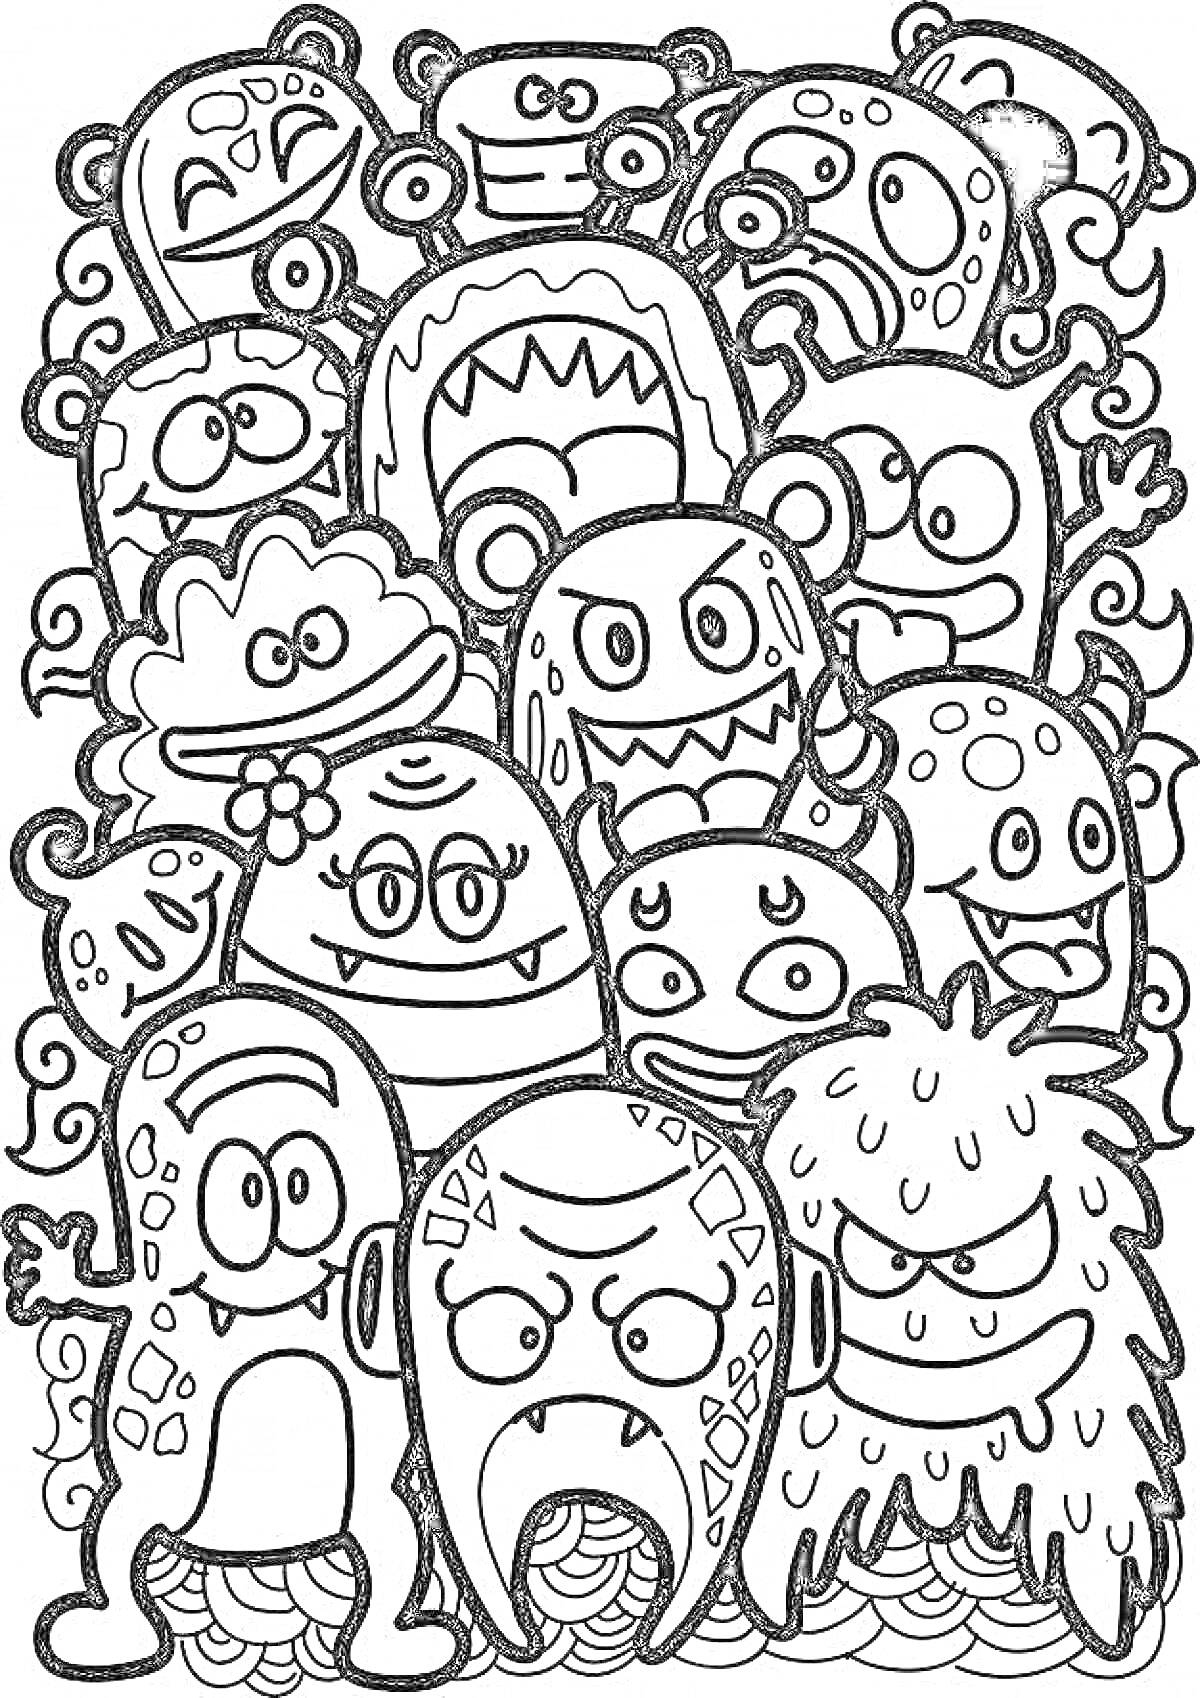 Раскраска Группа милых монстриков с разными лицами, глазами, рогами и эмоциями